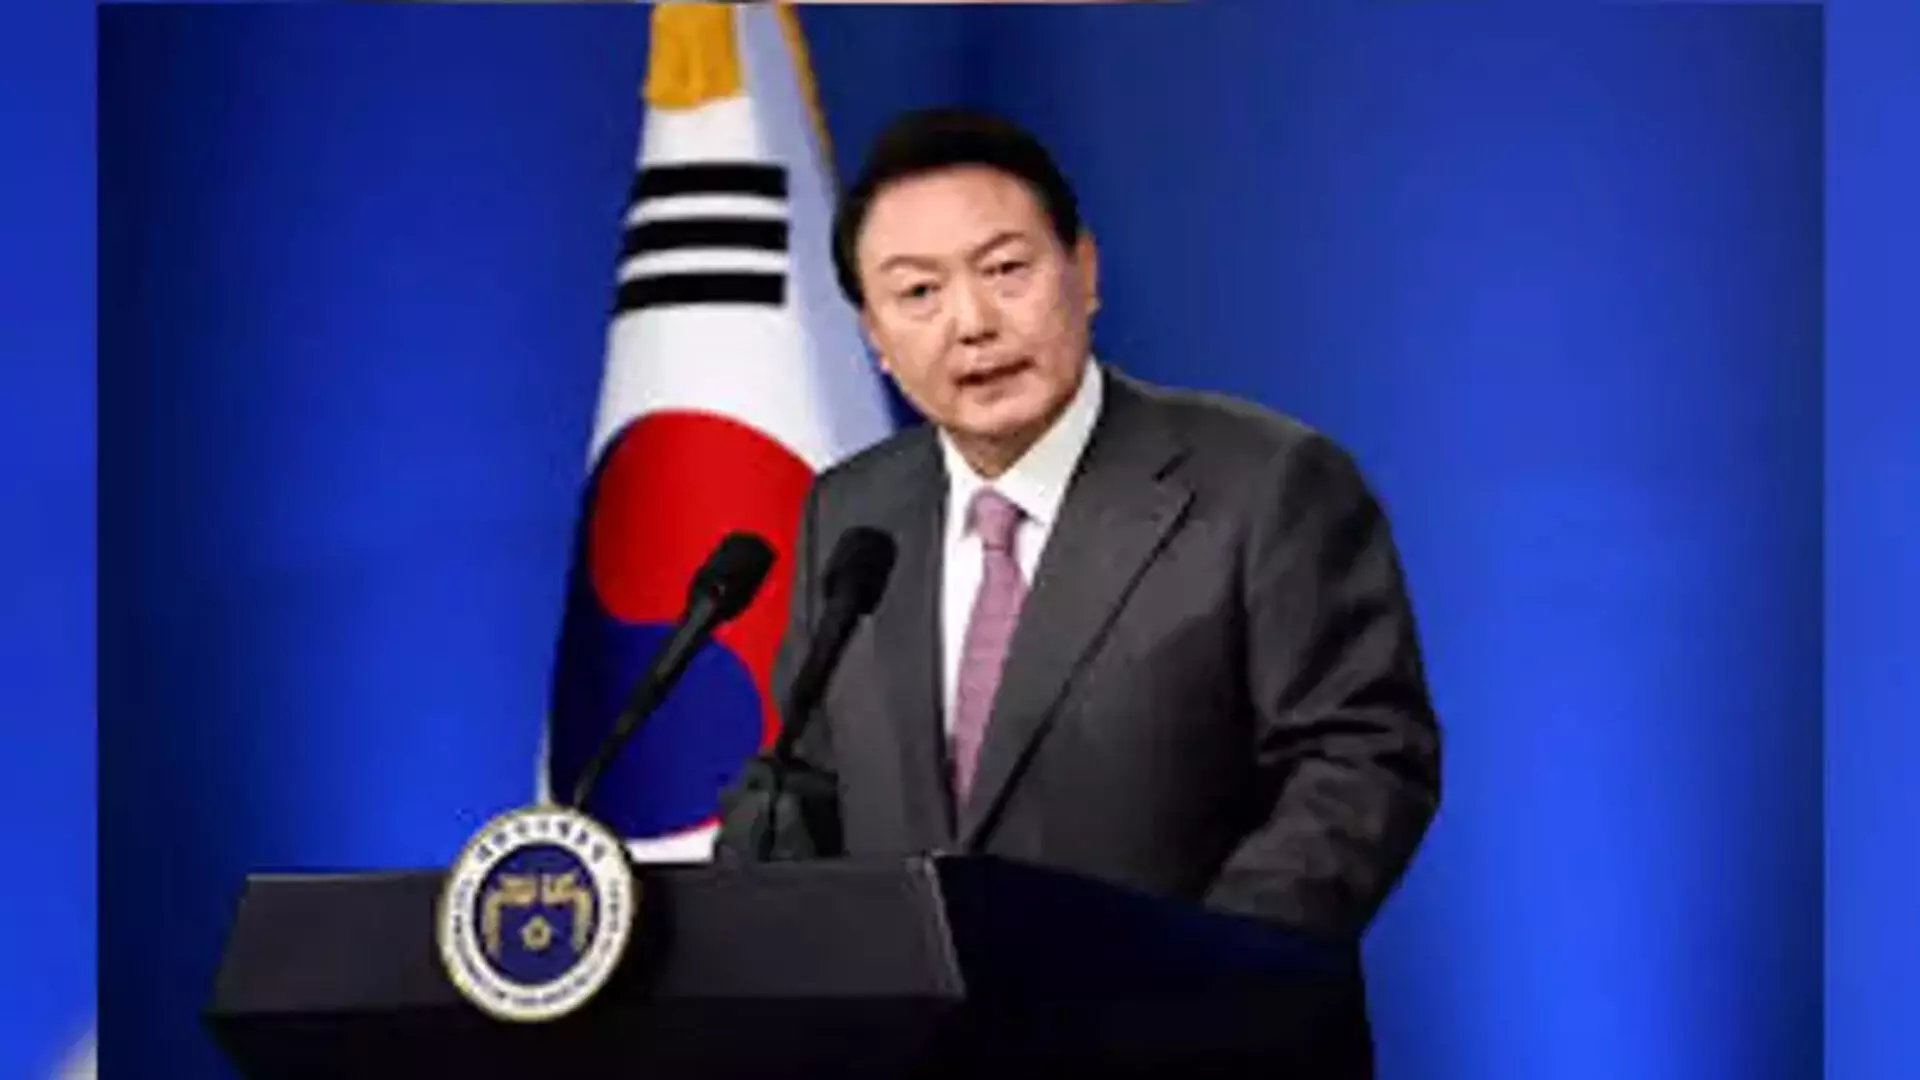 दक्षिण कोरिया के राष्ट्रपति को एक महत्वपूर्ण संसदीय चुनाव में एक बड़ी परीक्षा का सामना करना पड़ रहा